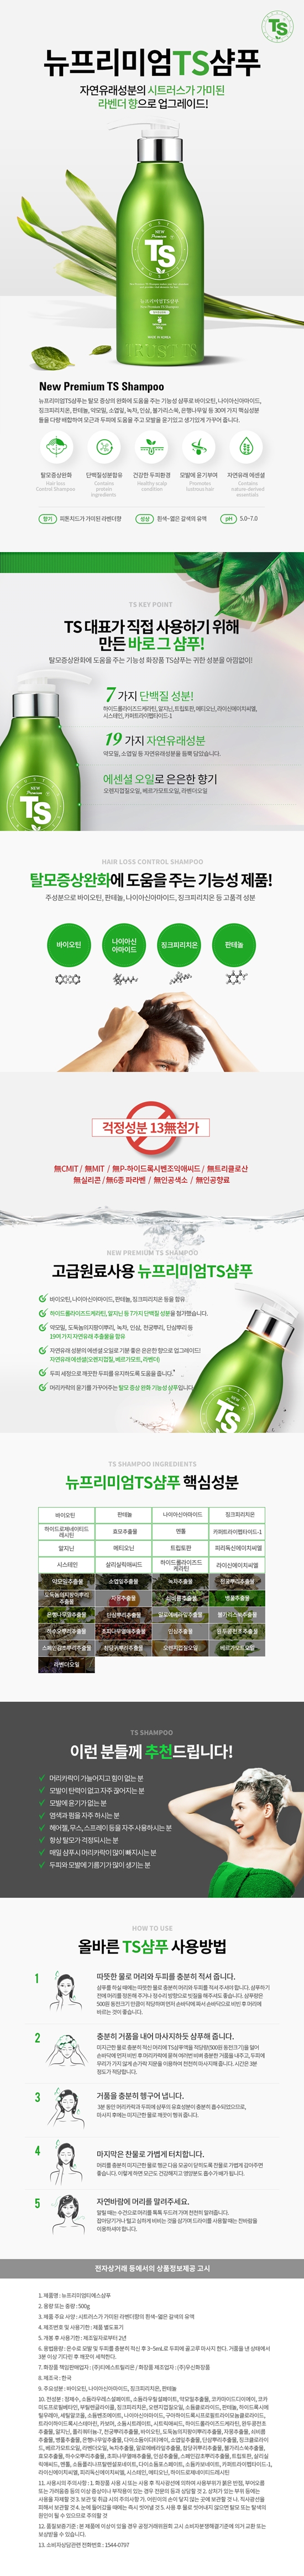 ts-new-premium-shampoo-500g-info2.jpg